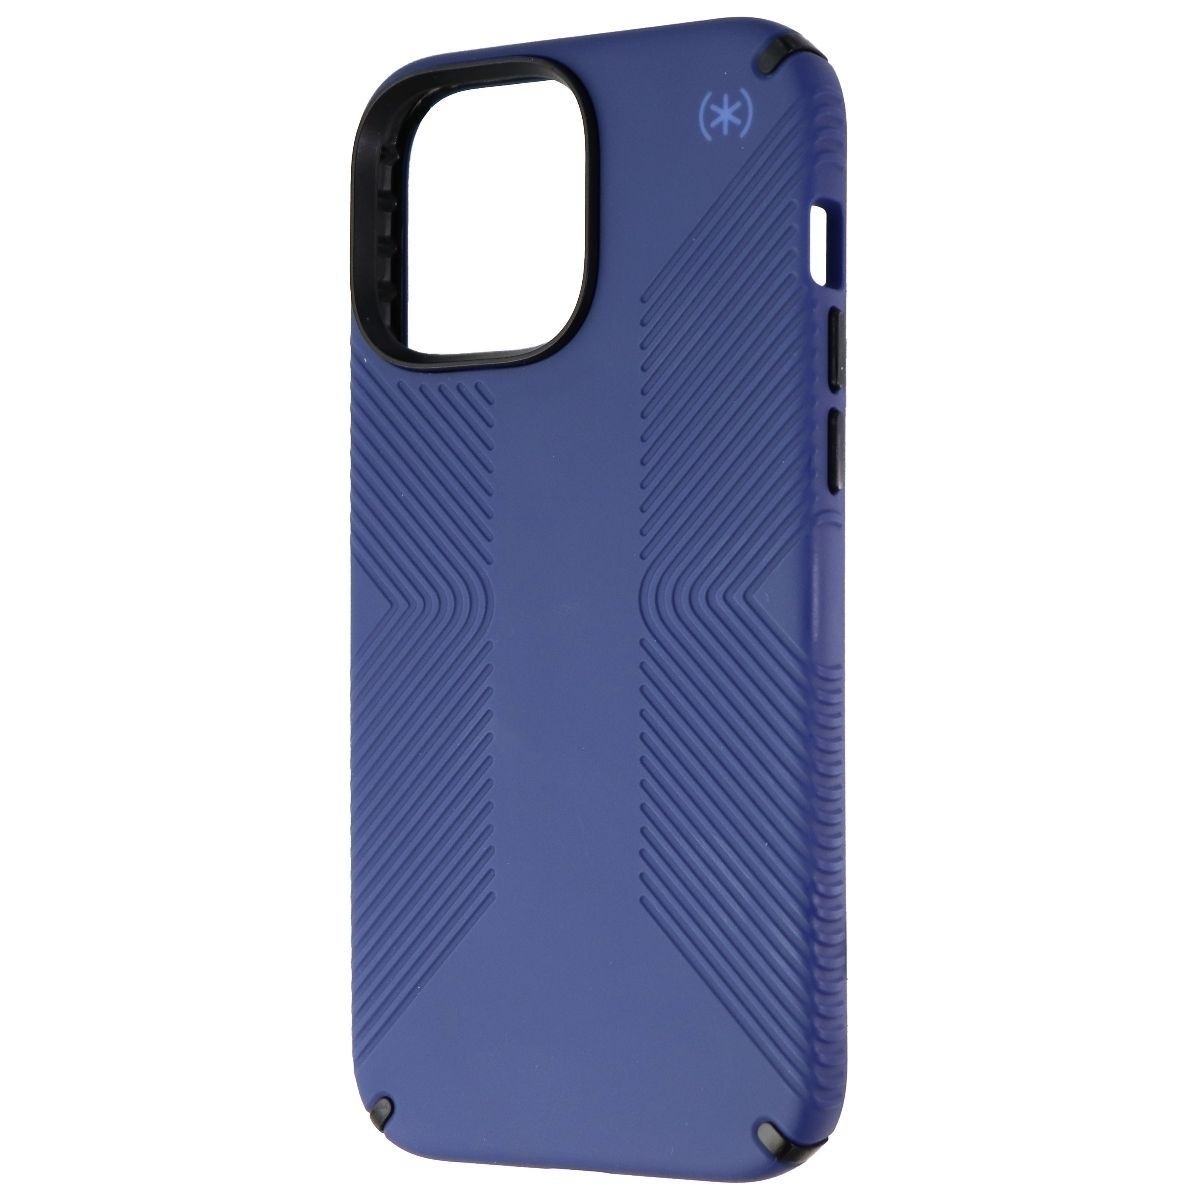 Speck Presidio2 Grip Case For IPhone 13 Pro Max/12 Pro Max - Coastal Blue/Black